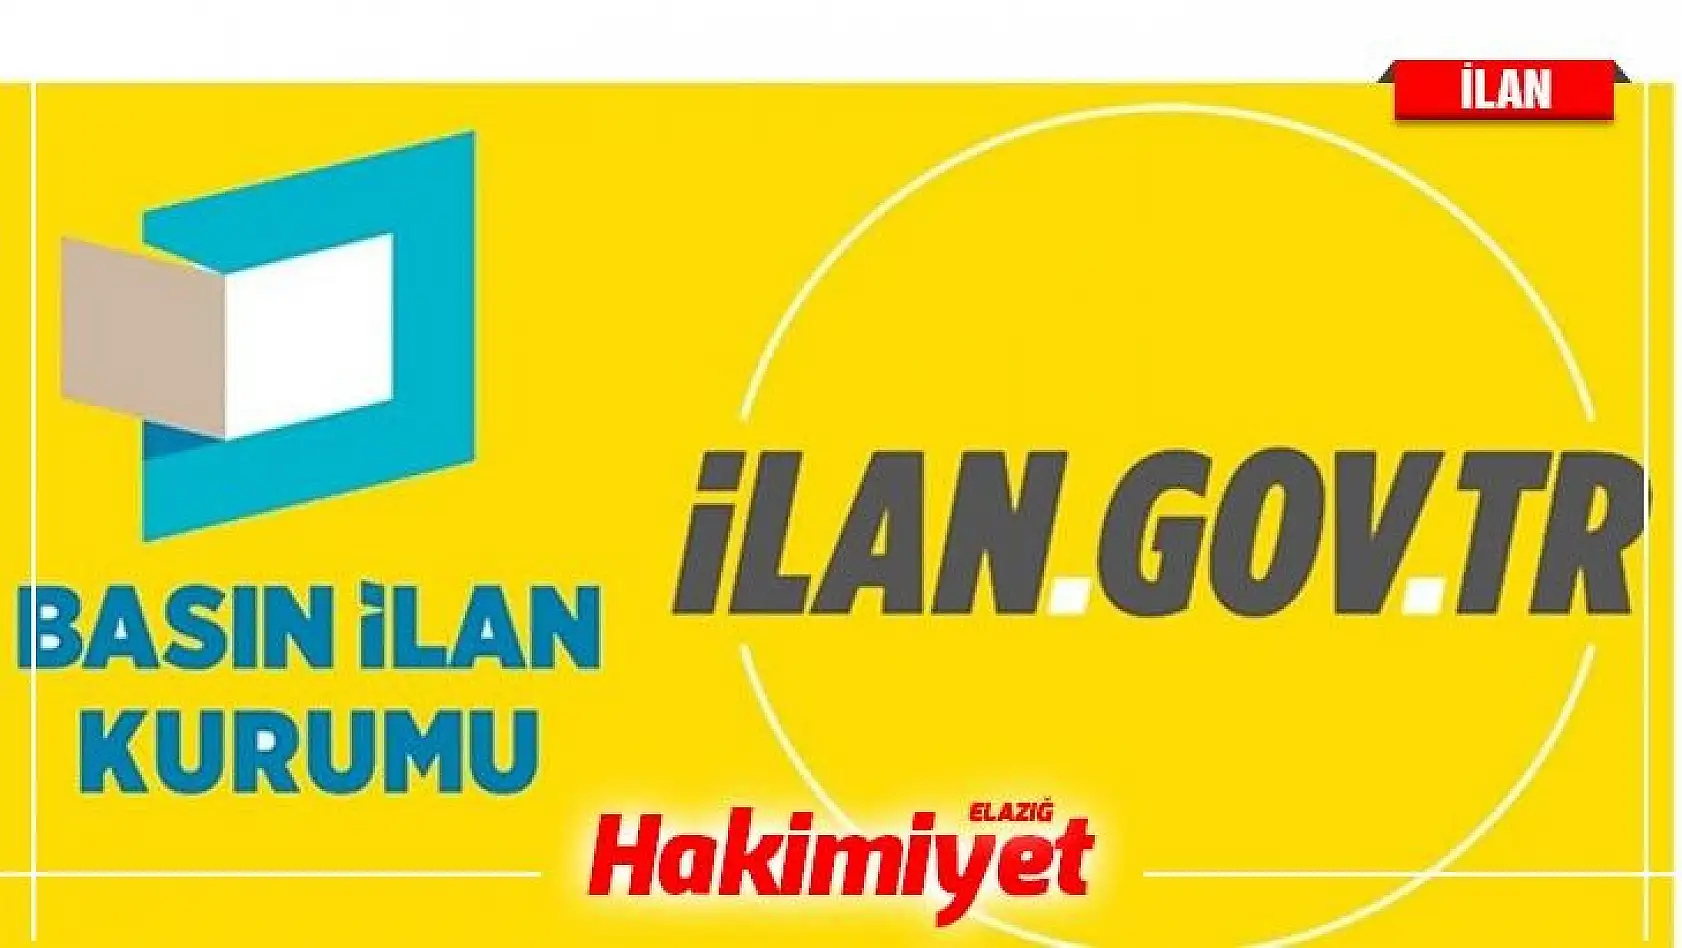 İstanbul Arel Üniversitesi 67 Öğretim Elemanı alacak